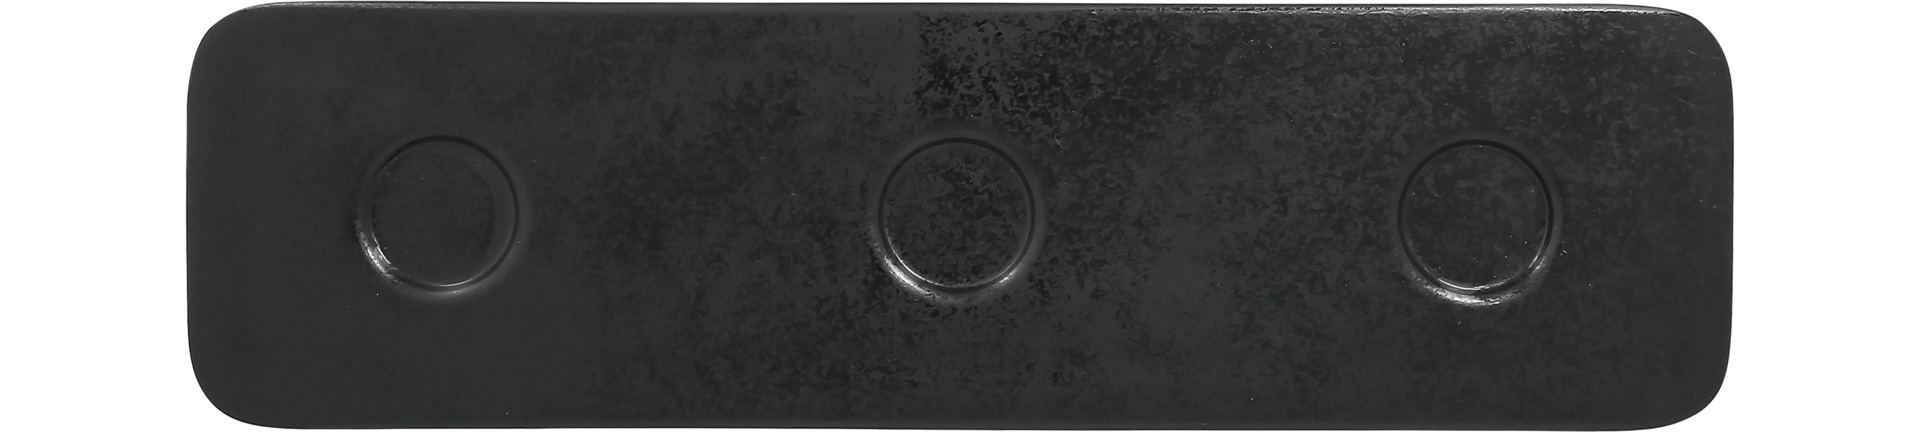 Platte rechteckig shaped mit 3 Ringen 360 x 100 mm schwarz